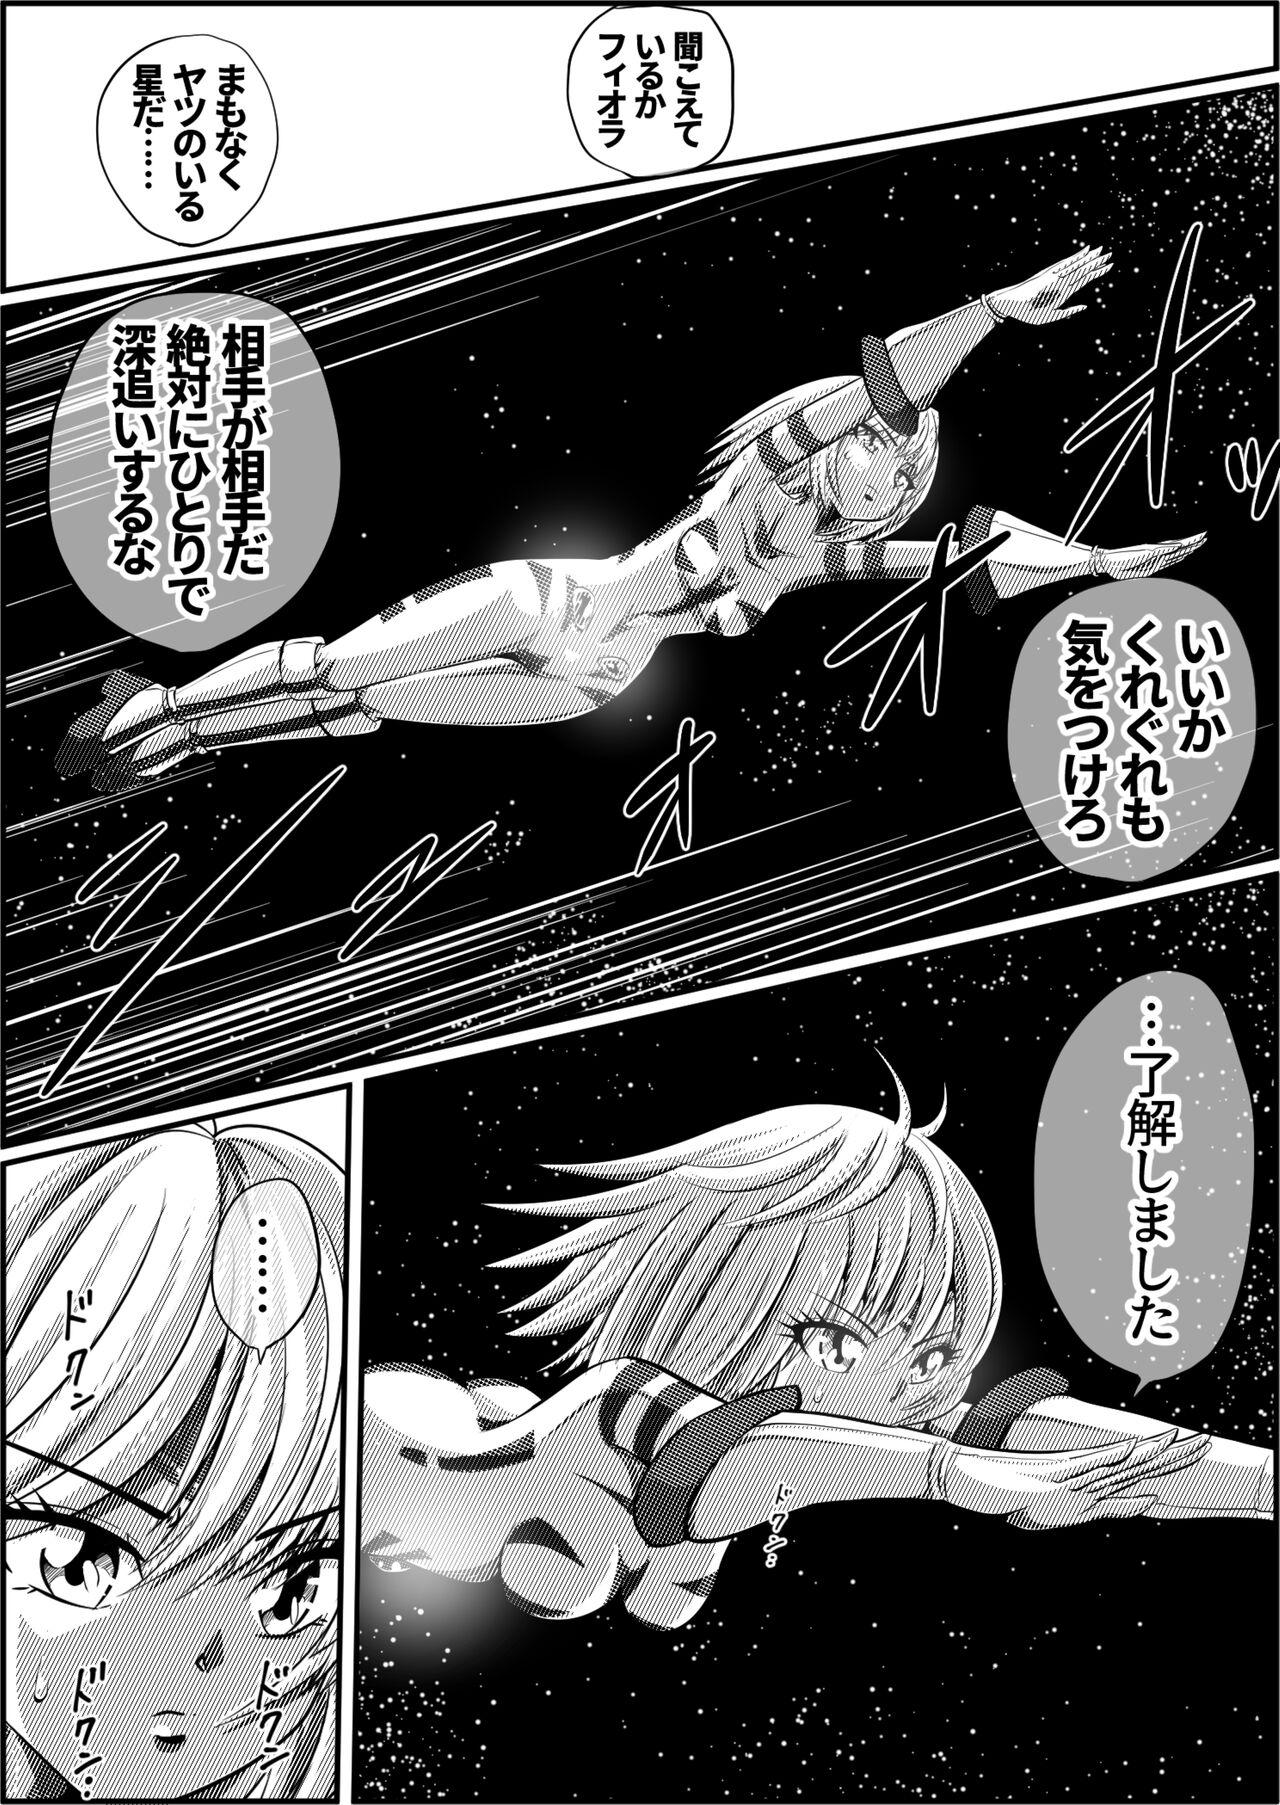 Mojada 罪人と姫 - Original Rubdown - Page 2